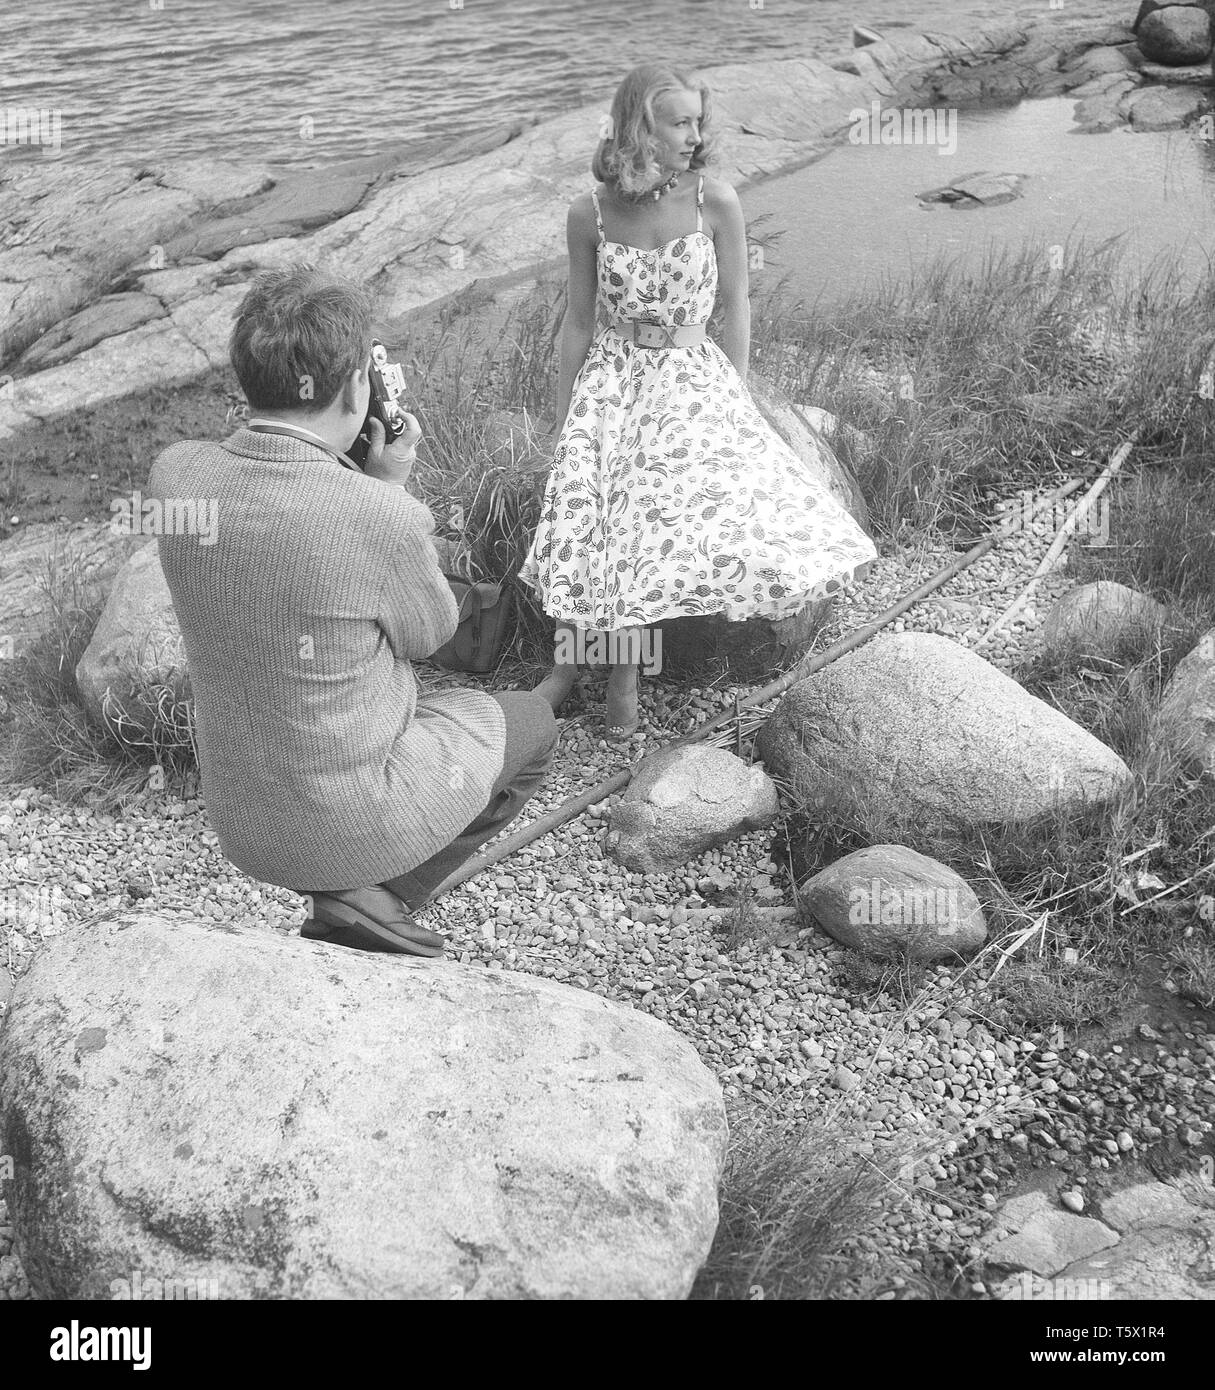 Amateurfotograf in den 1950er Jahren Er ist der us-amerikanische Schauspieler Burgess Meredith, der ein Foto von seiner schwedischen Frau Kaja Sundsten macht. Schweden 1954. Foto Kristoffersson Ref. BF78-1 Stockfoto